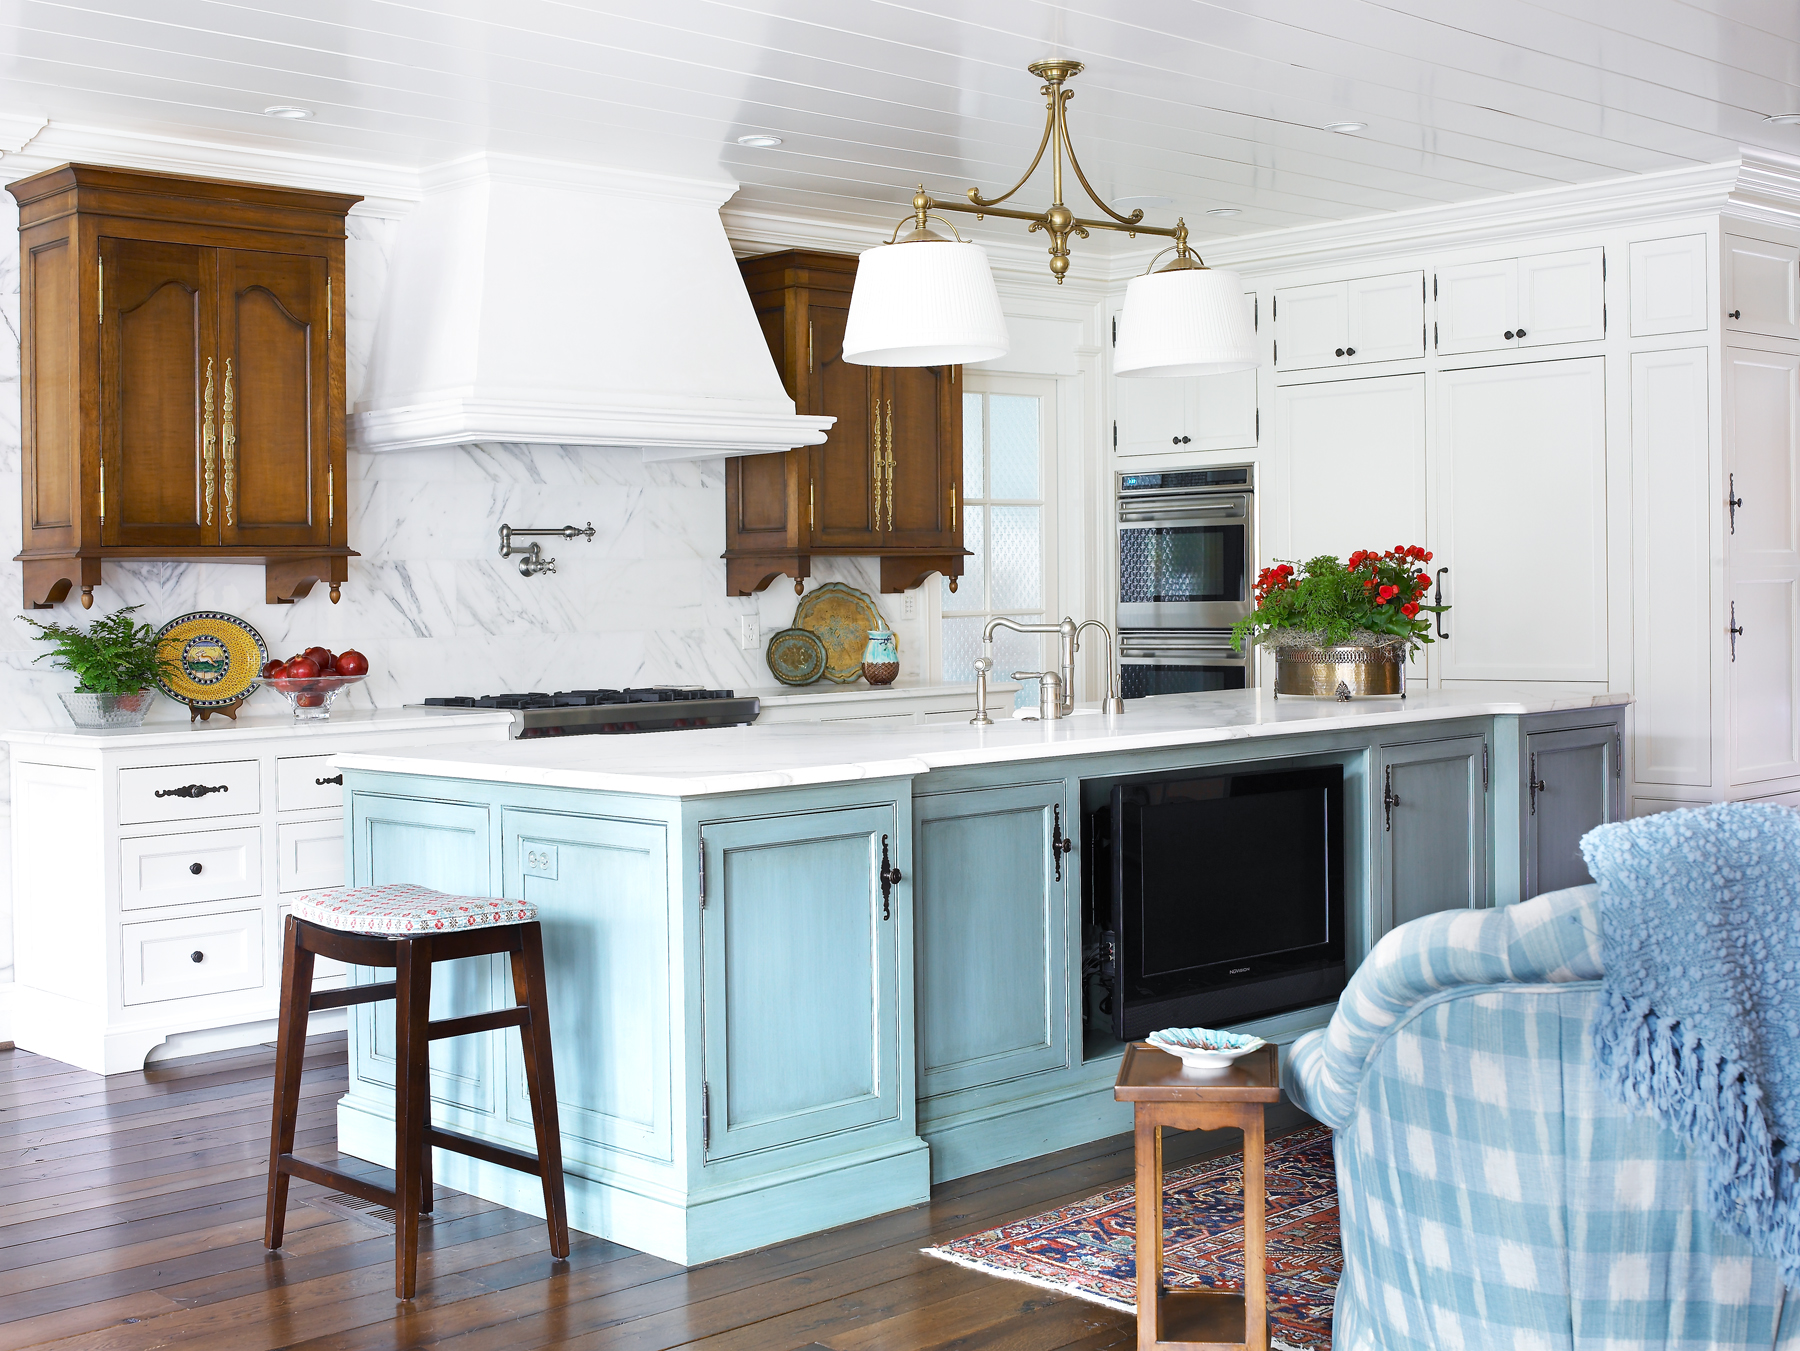 Eine schöne Kombination aus weißen und blauen Möbeln im Inneren der Küche